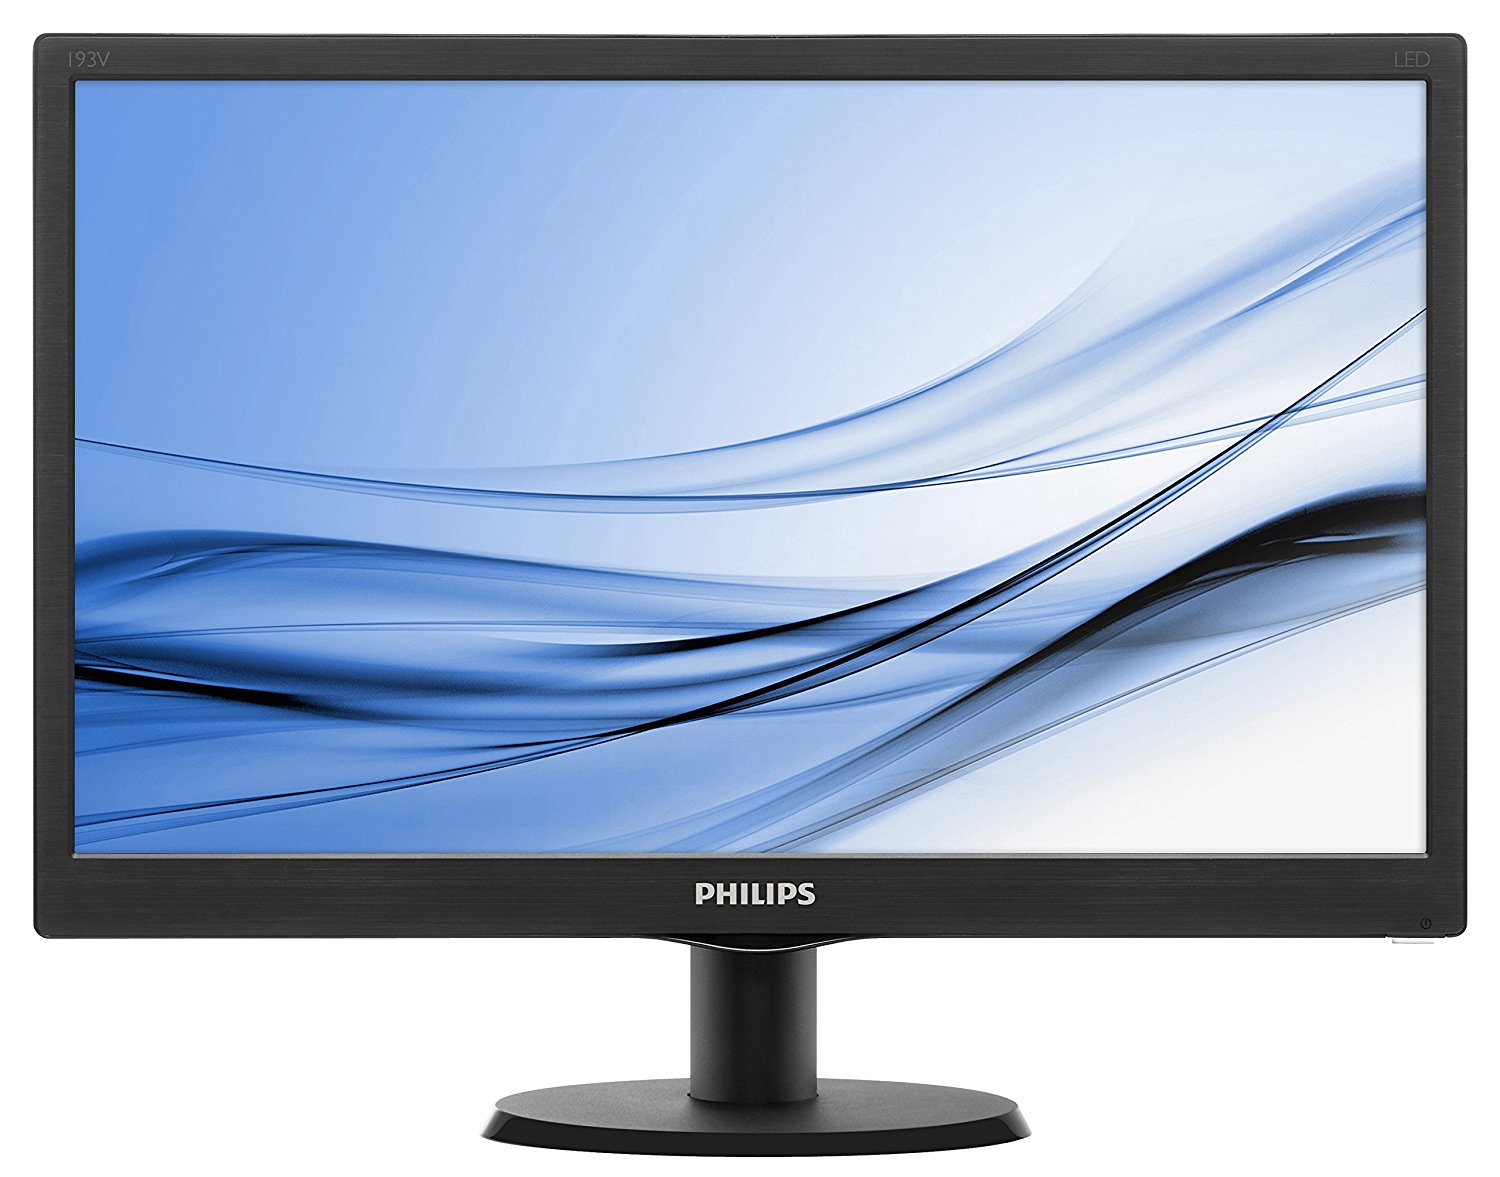 Deny Instantly Situation Philips 203V5LSB26/10 V-line 19.5" LED Monitor 1600x900 Res, 200cd/mÂ²,  5ms, VGA | LaptopOutlet, UK